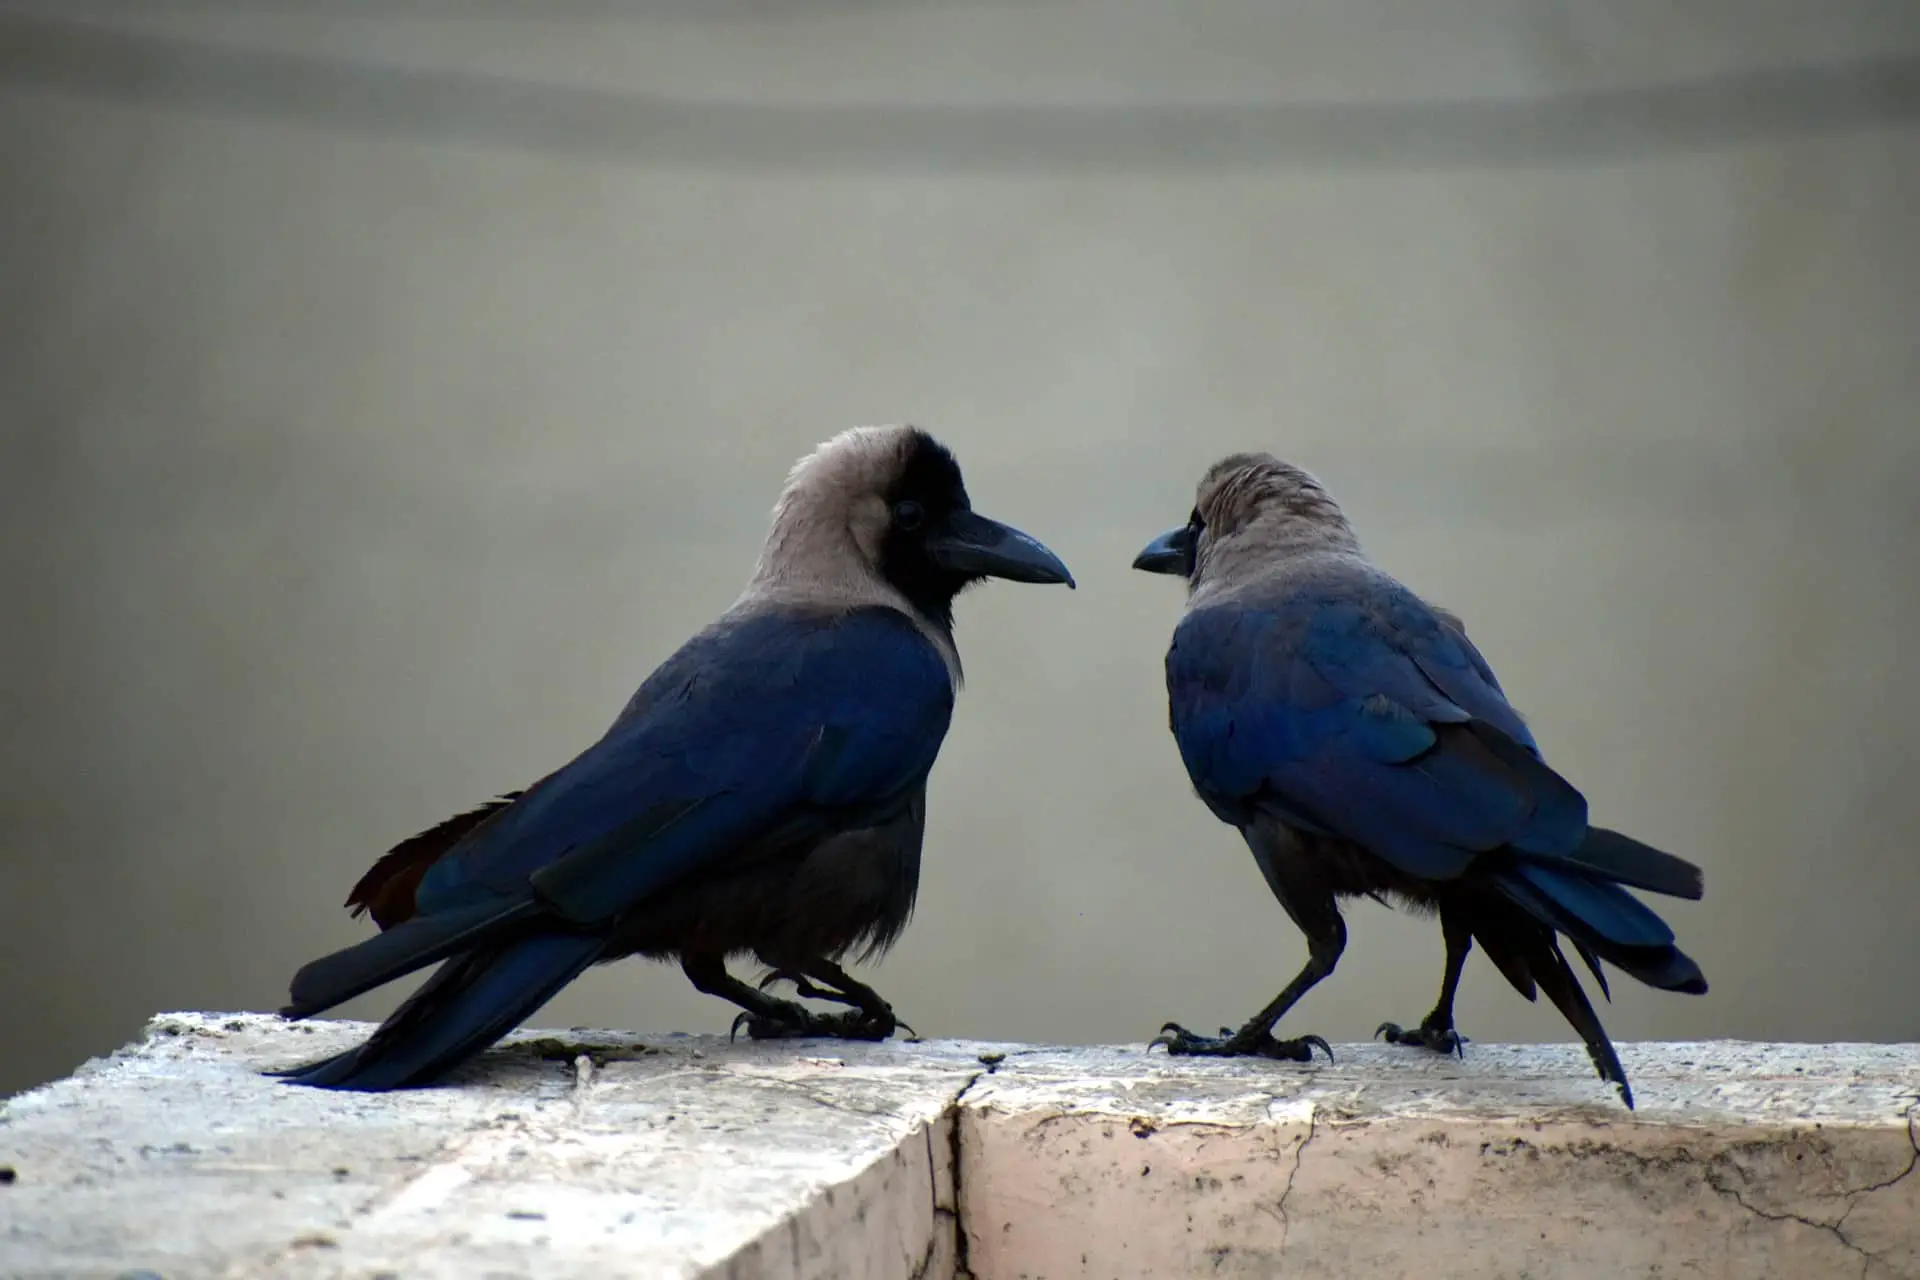 are crows monogamous